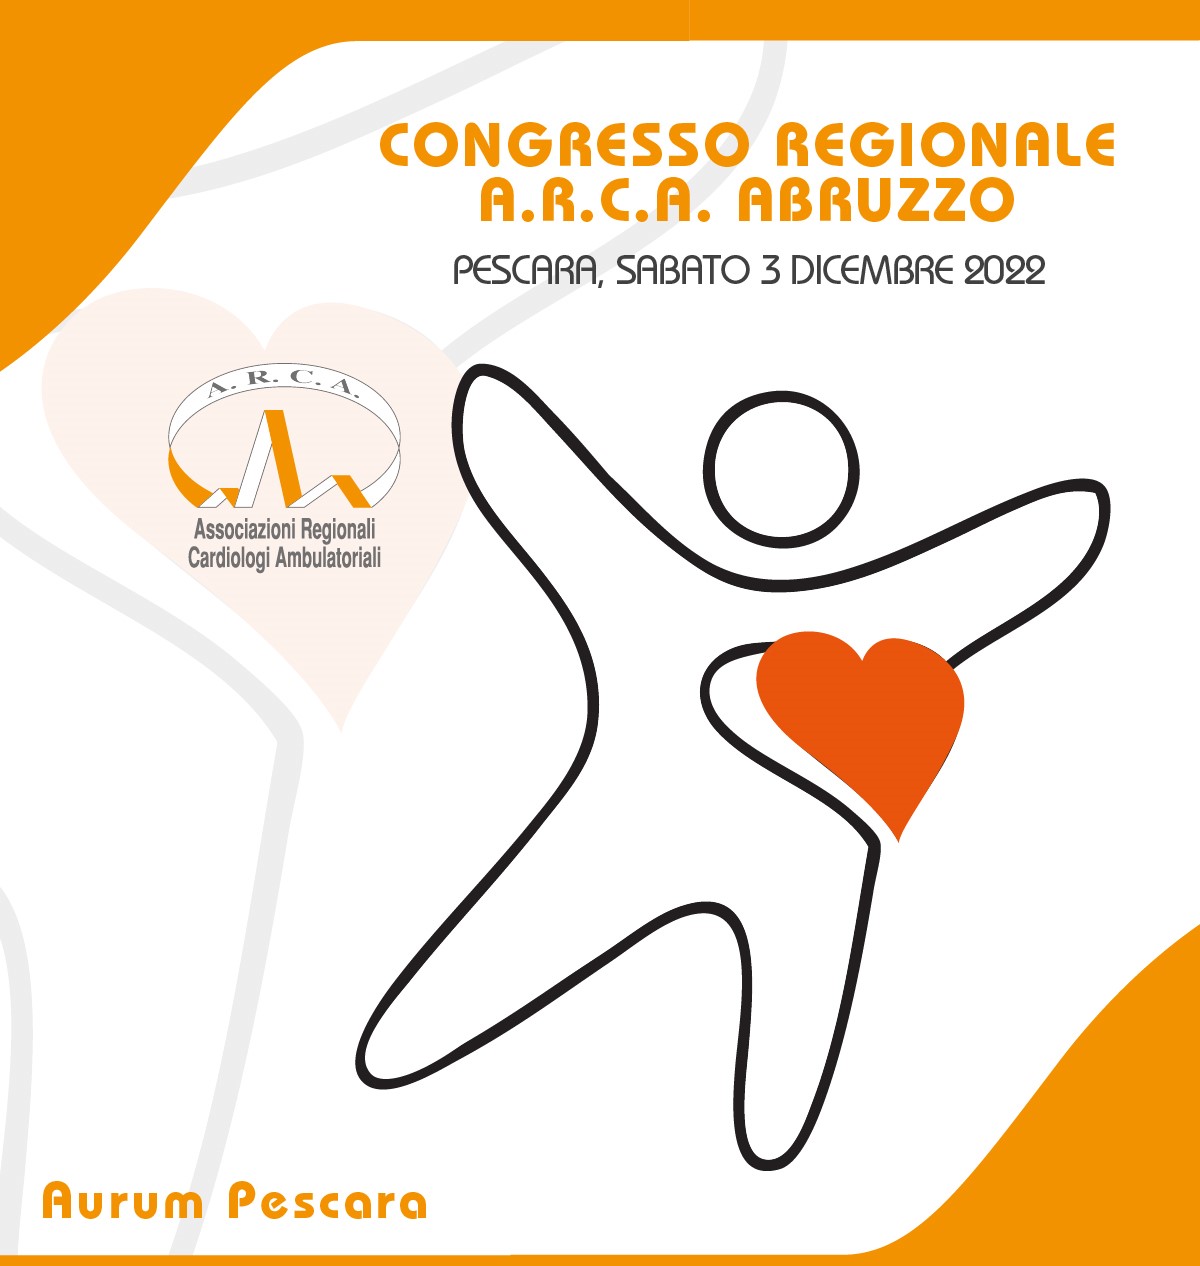 Clicca per accedere all'articolo Congresso Regionale A.R.C.A. Abruzzo